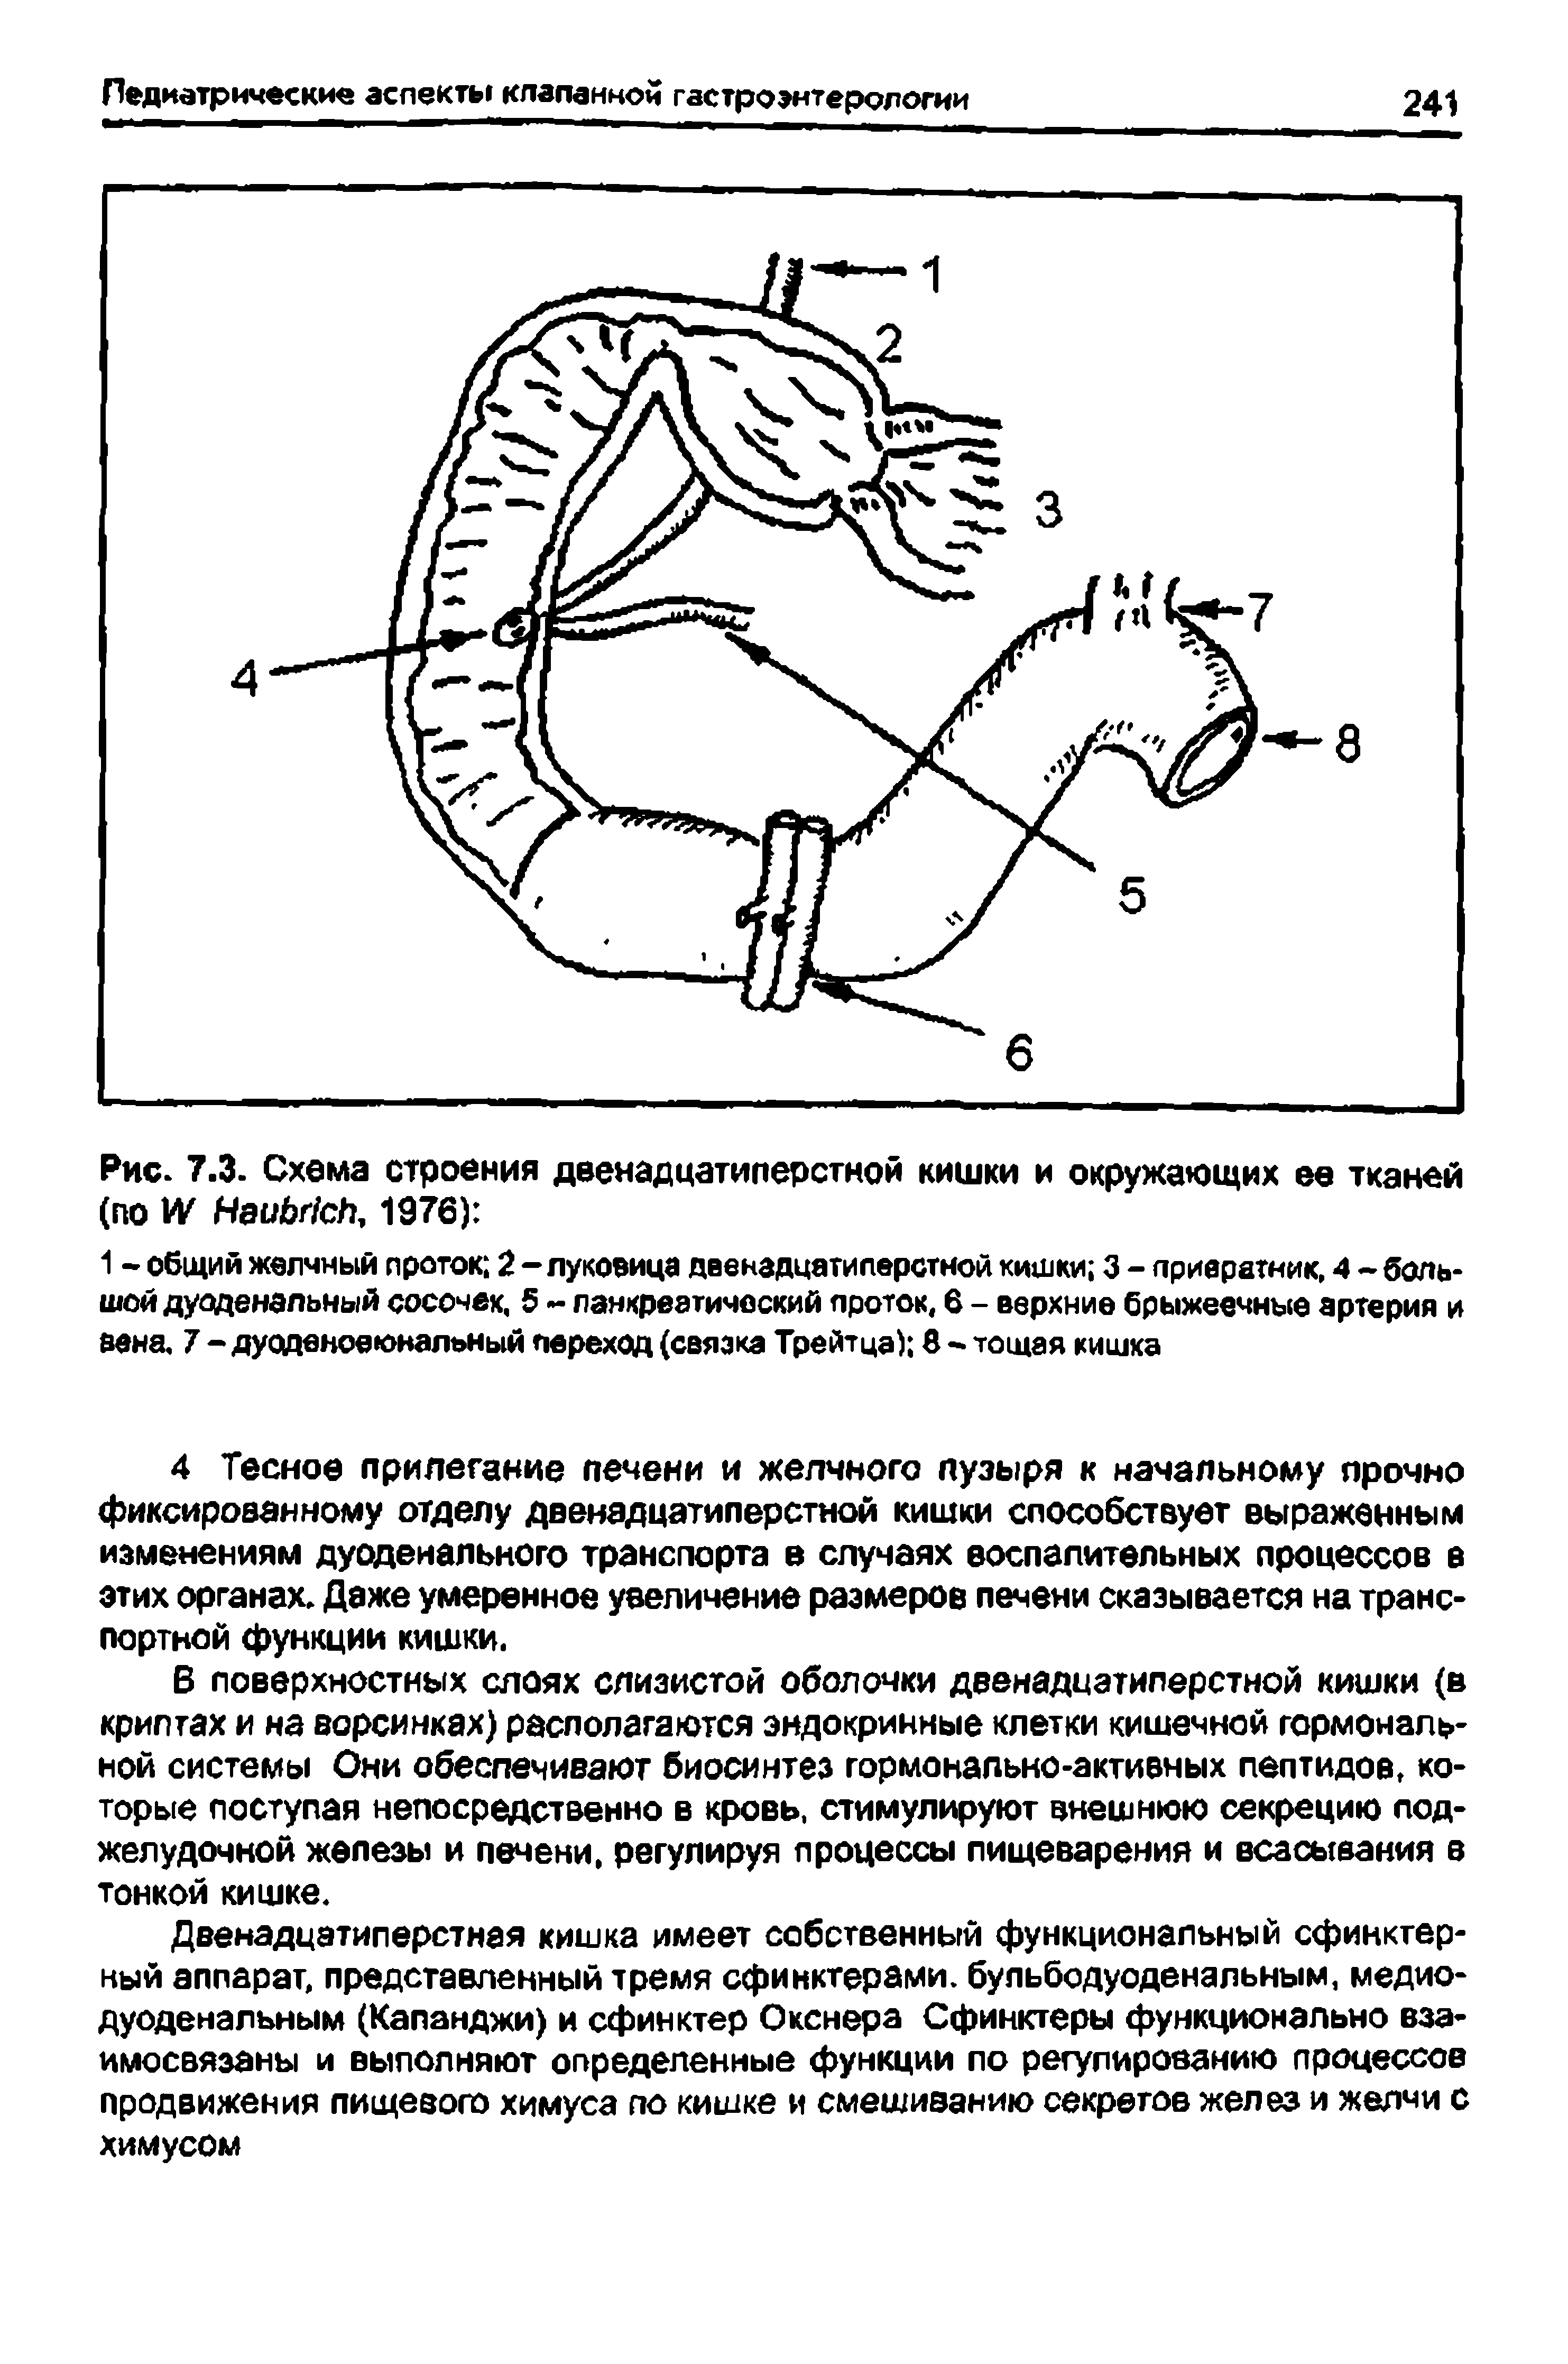 Рис. 7.3. Схема строения двенадцатиперстной кишки и окружающих ее тканей (по 1 НеиЬг1сЬ, 1976) ...